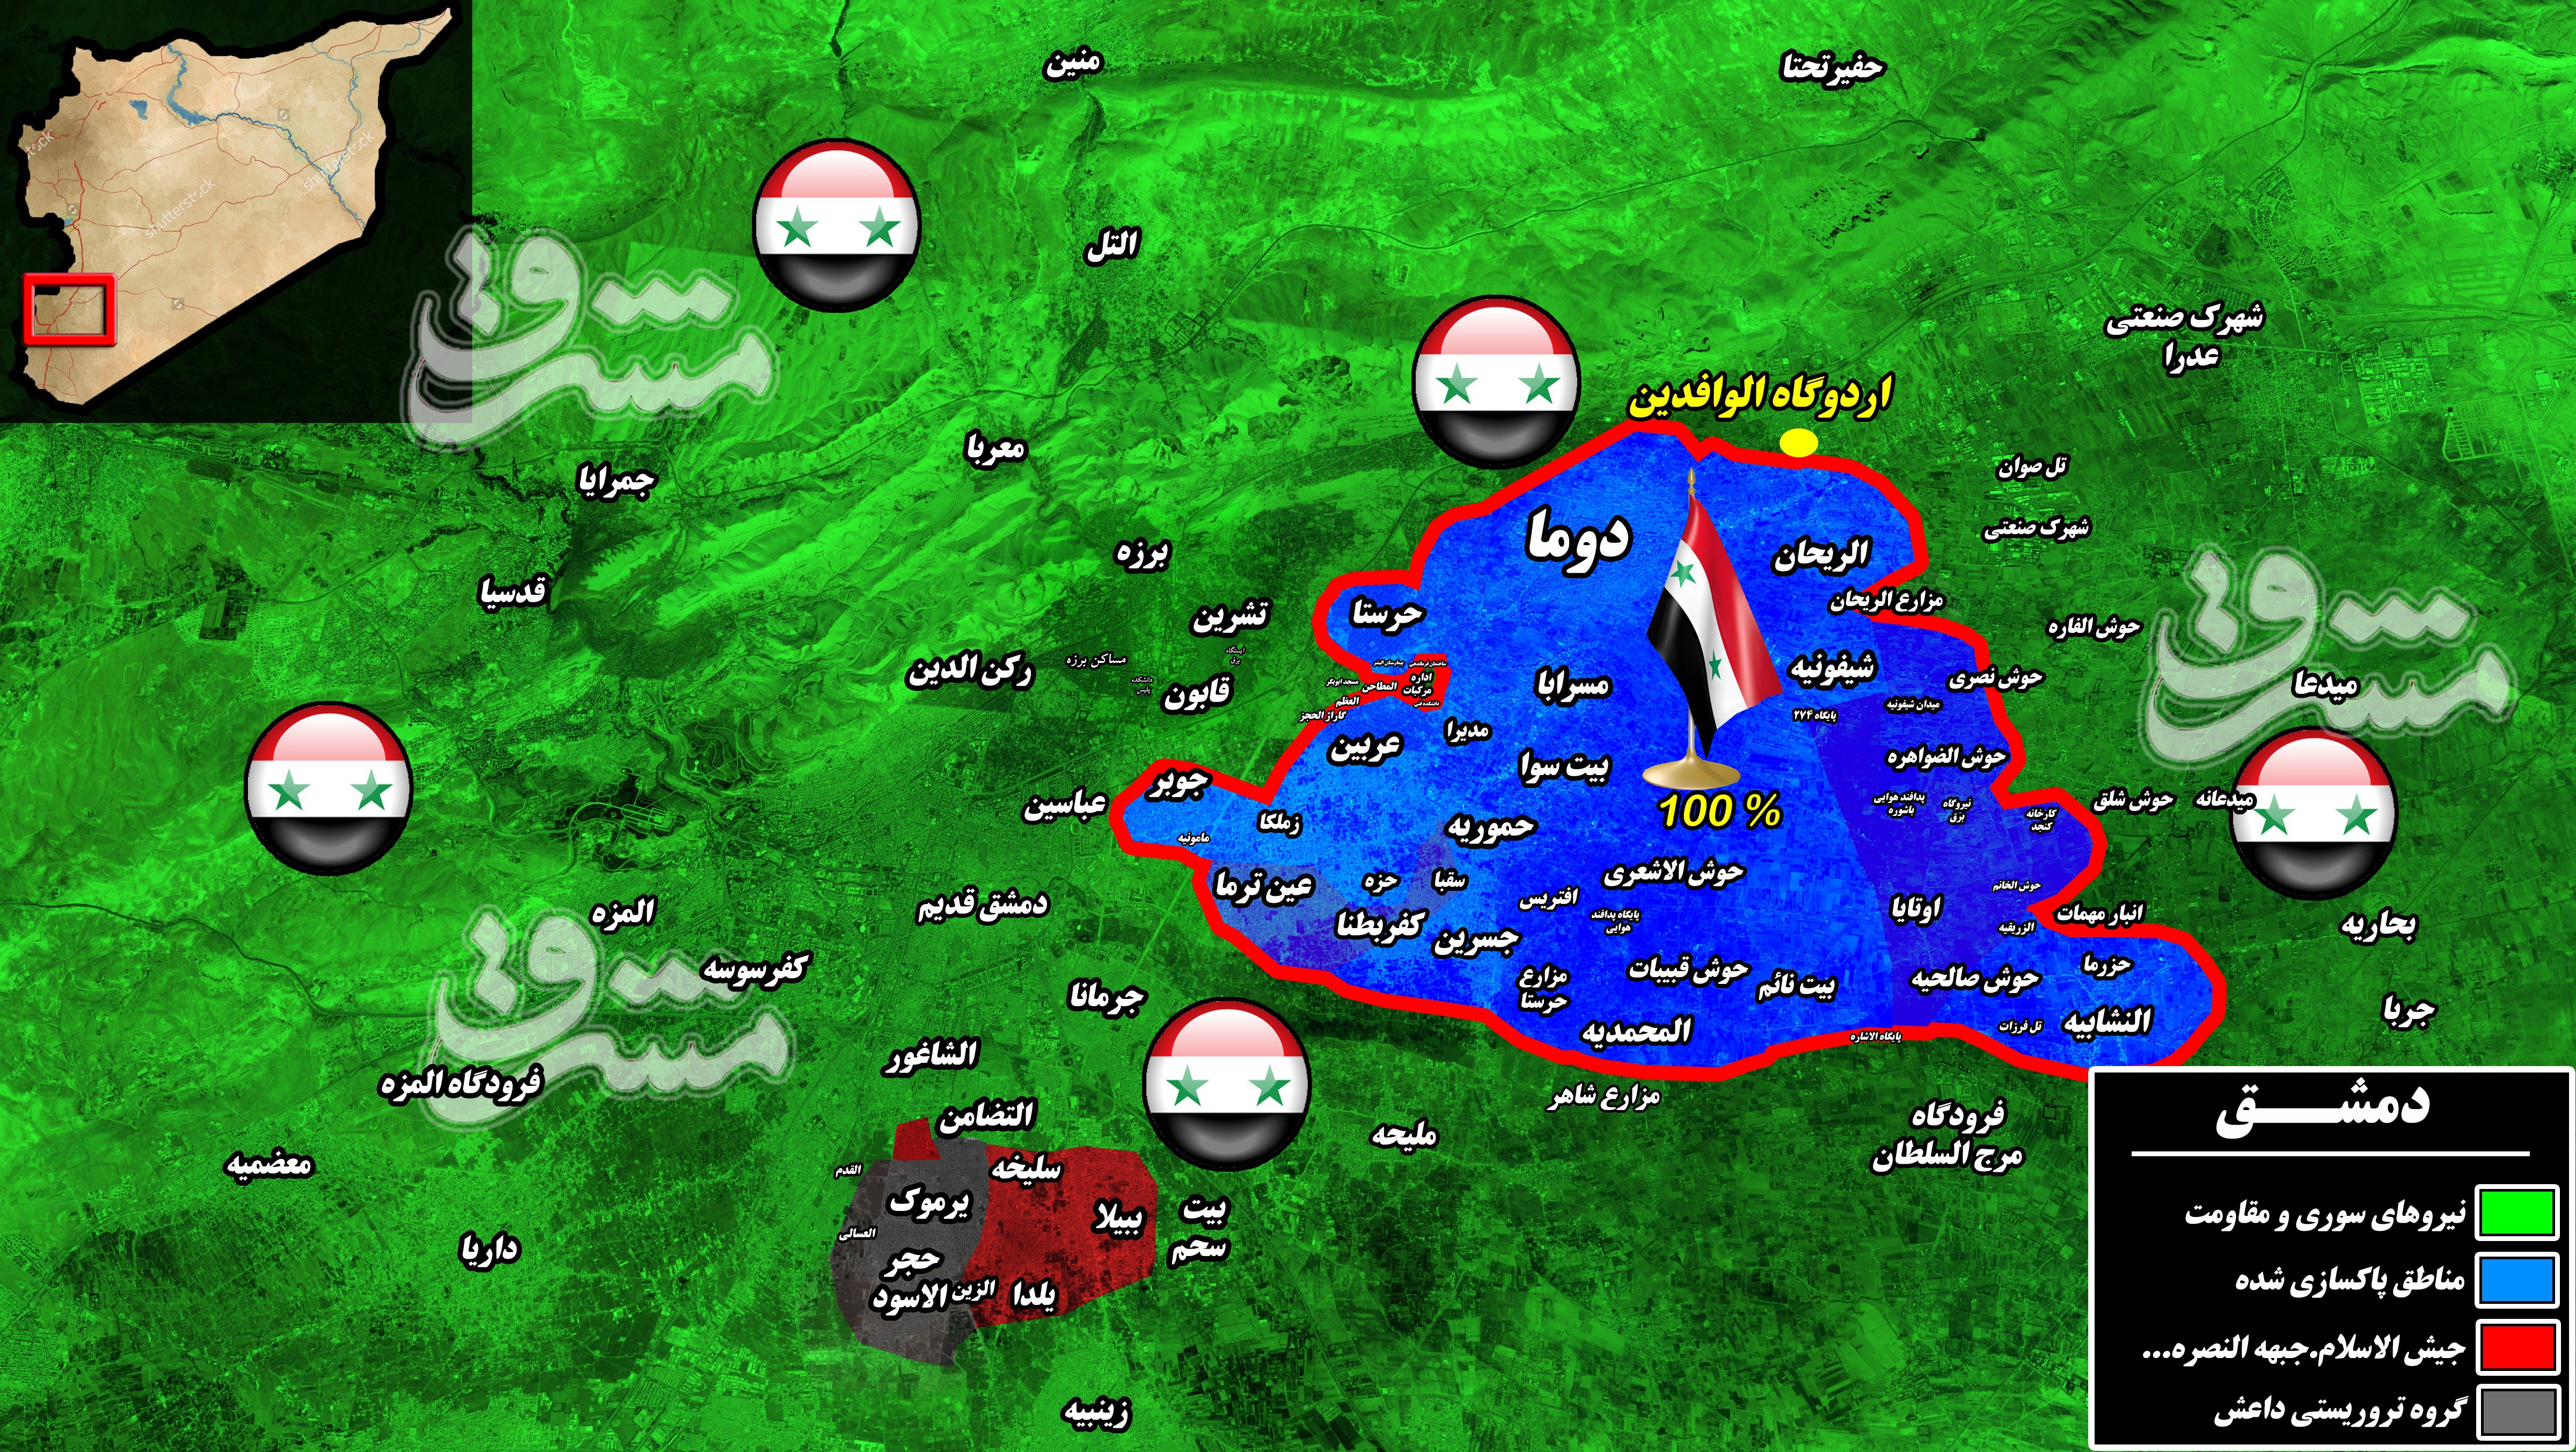 2232960 - آخرین تحولات میدانی جنوب دمشق پس از هزار و ۹۶۰ روز اشغالگری/ ۷۸ شهید و زخمی در حملات خمپاره ای داعش به پایتخت + نقشه میدانی